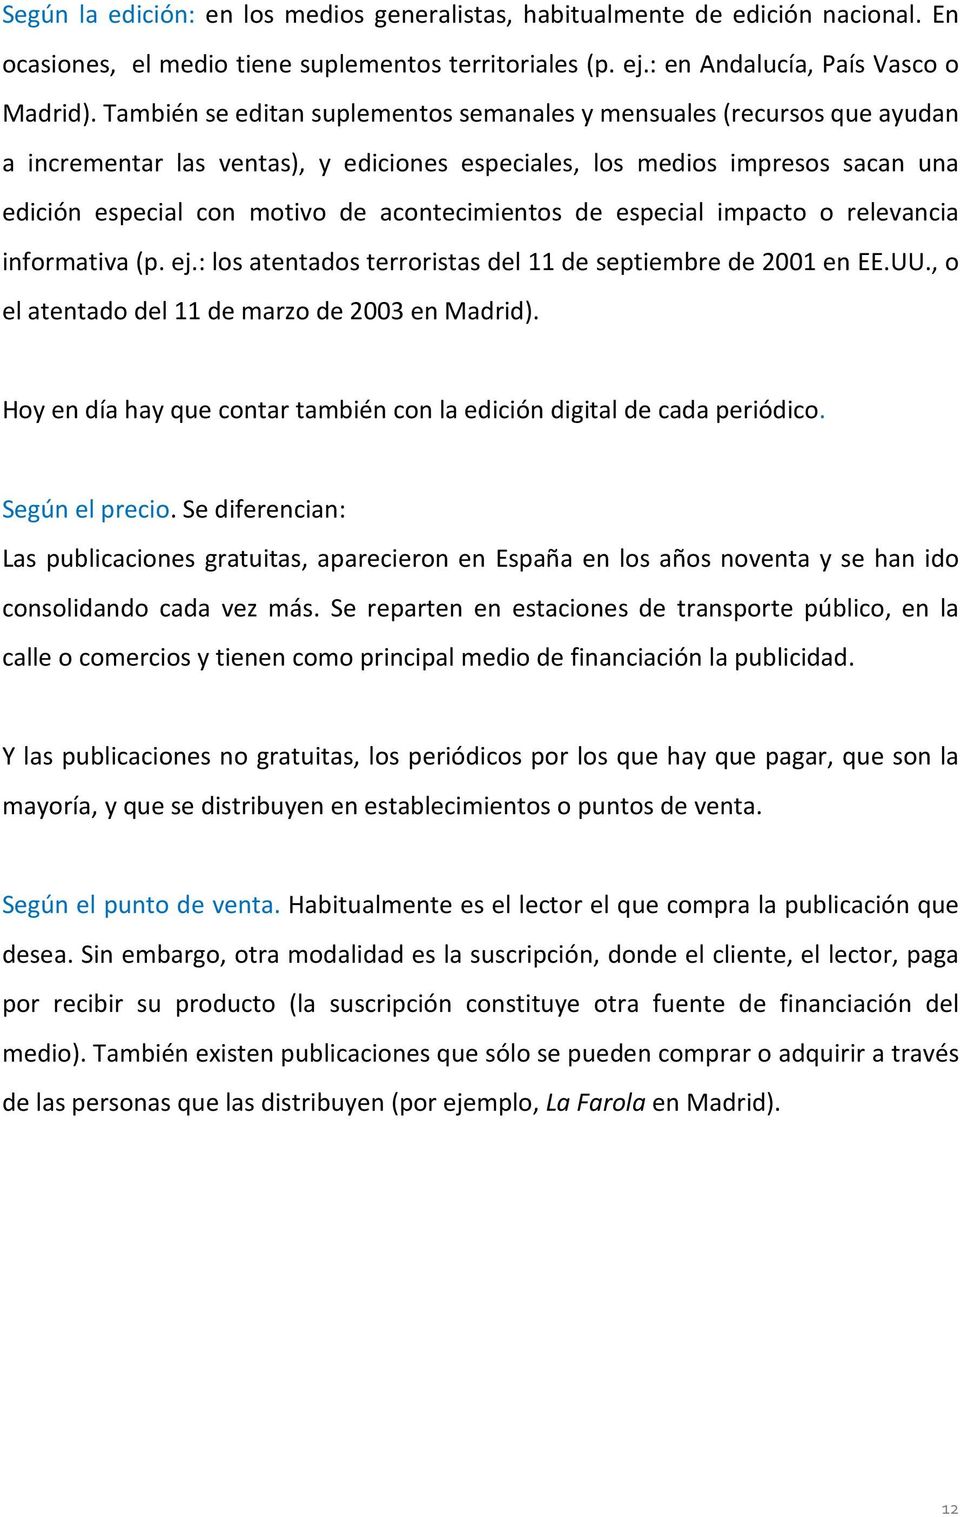 acontecimientos de especial impacto o relevancia informativa (p. ej.: los atentados terroristas del 11 de septiembre de 2001 en EE.UU., o el atentado del 11 de marzo de 2003 en Madrid).